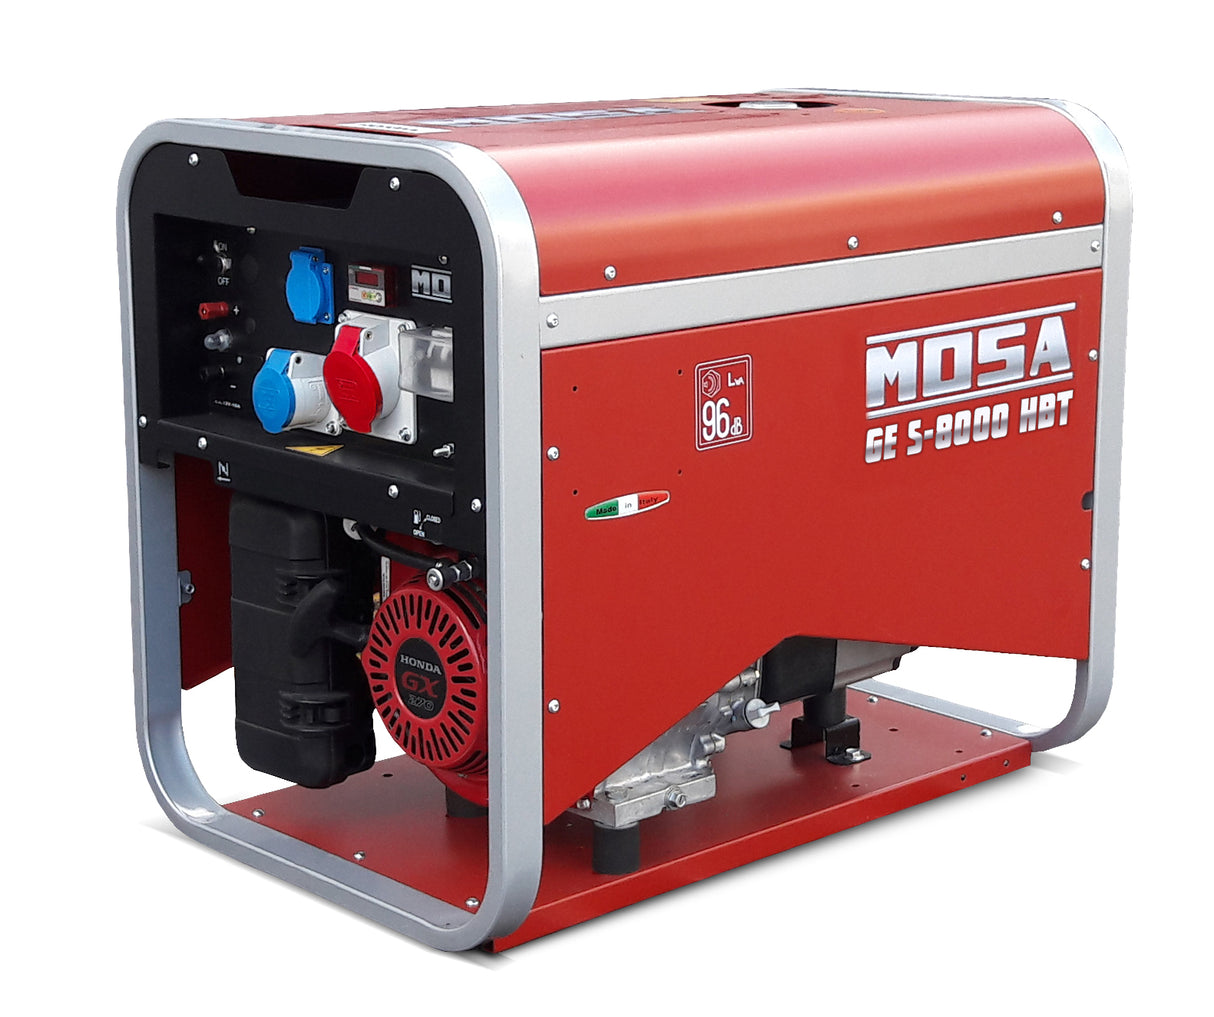 Groupe électrogène portable MOSA GES 8000 HBT 